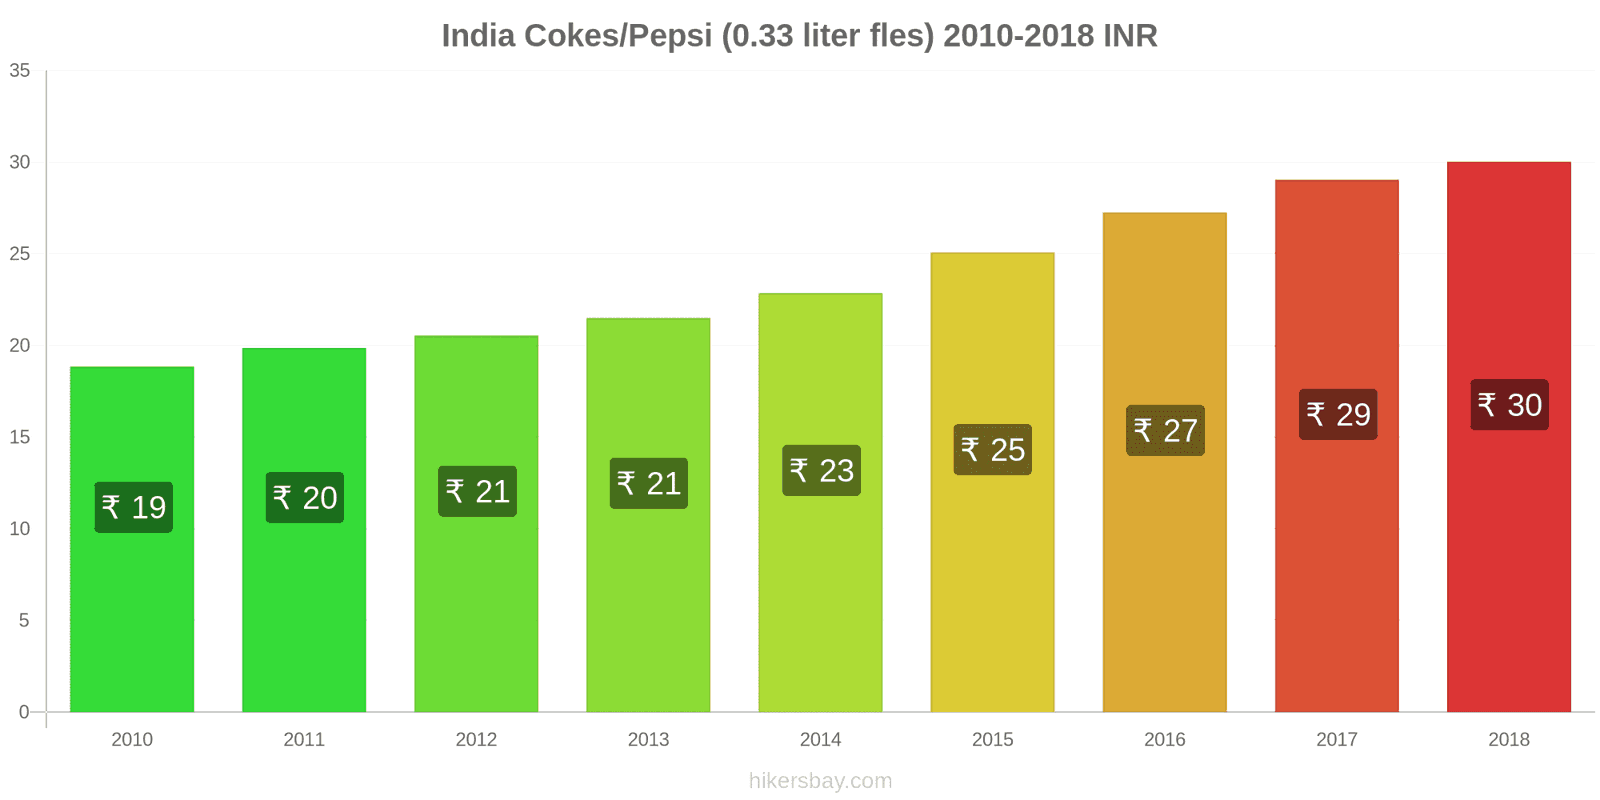 India prijswijzigingen Coca-Cola/Pepsi (0.33 liter fles) hikersbay.com